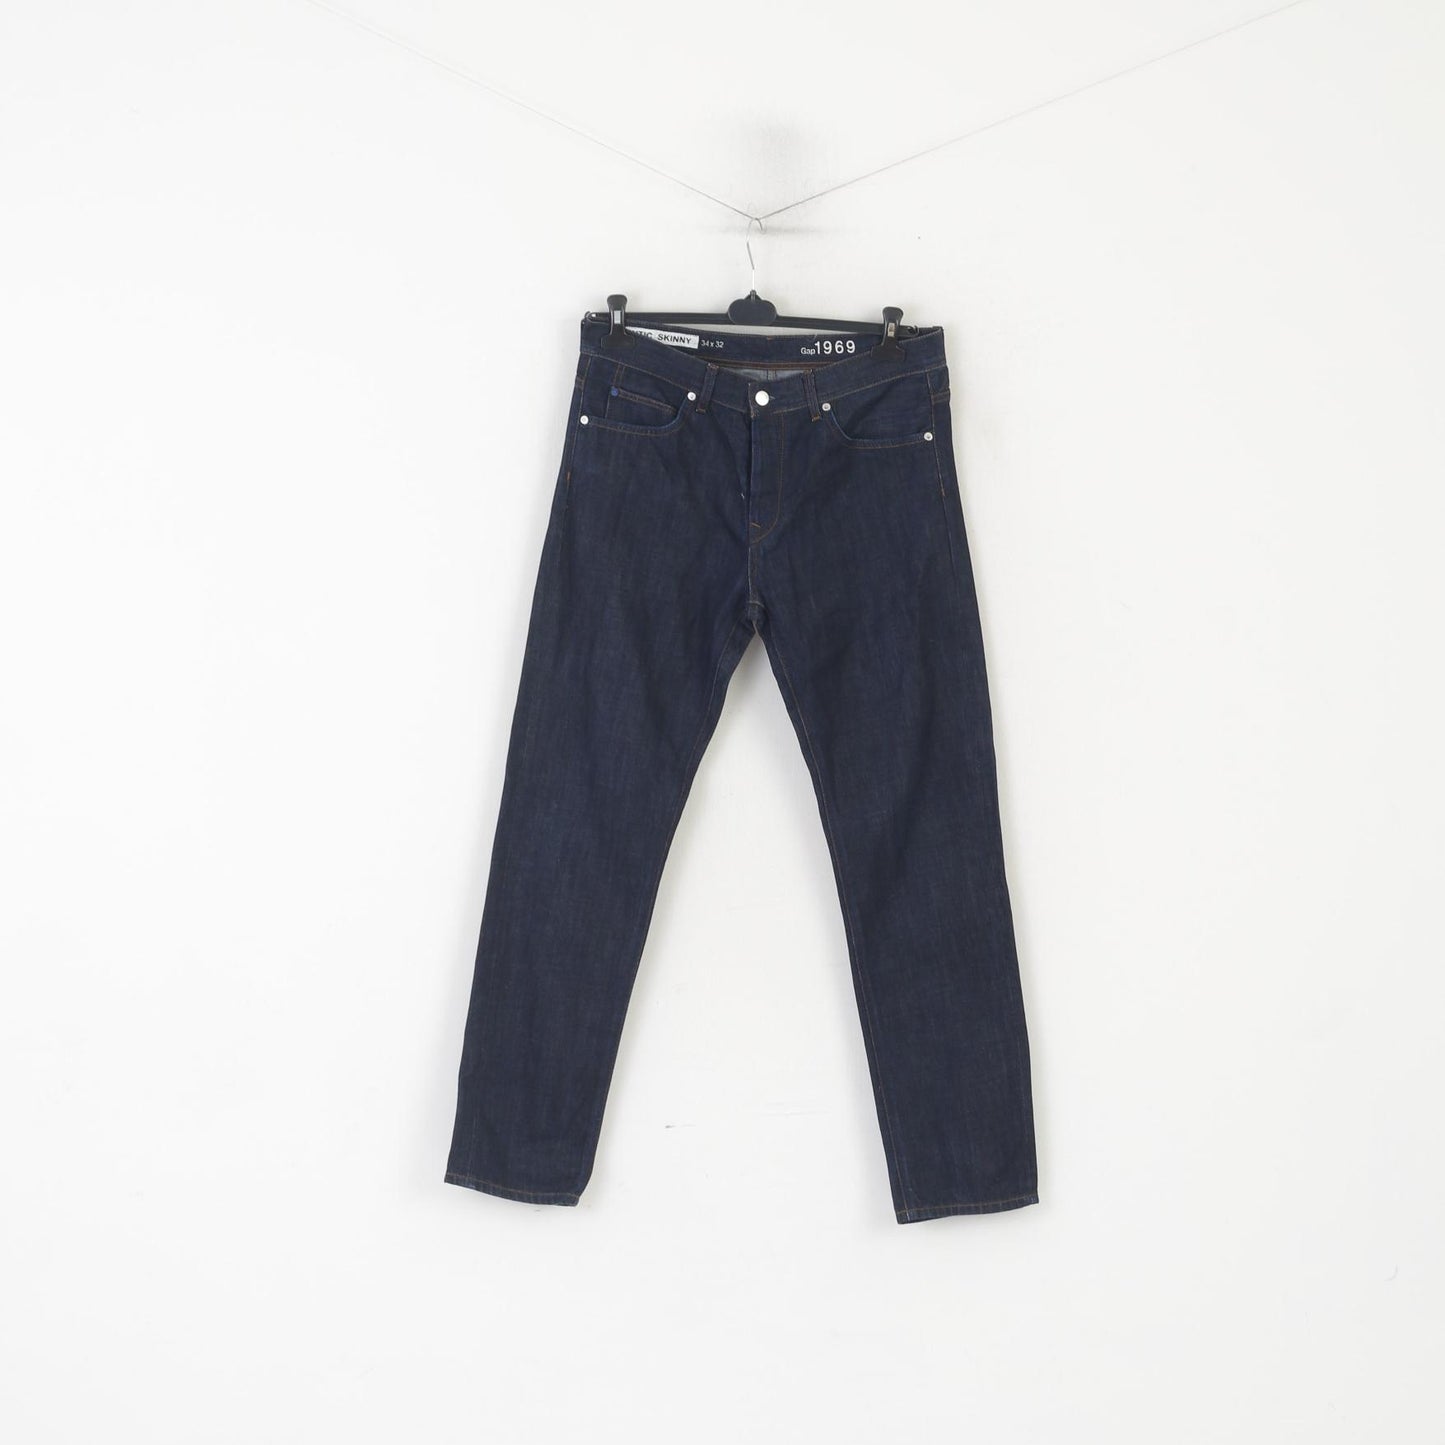 Gap Men 34 Jeans Trousers Navy Denim Cotton Authentic Skinny Pants